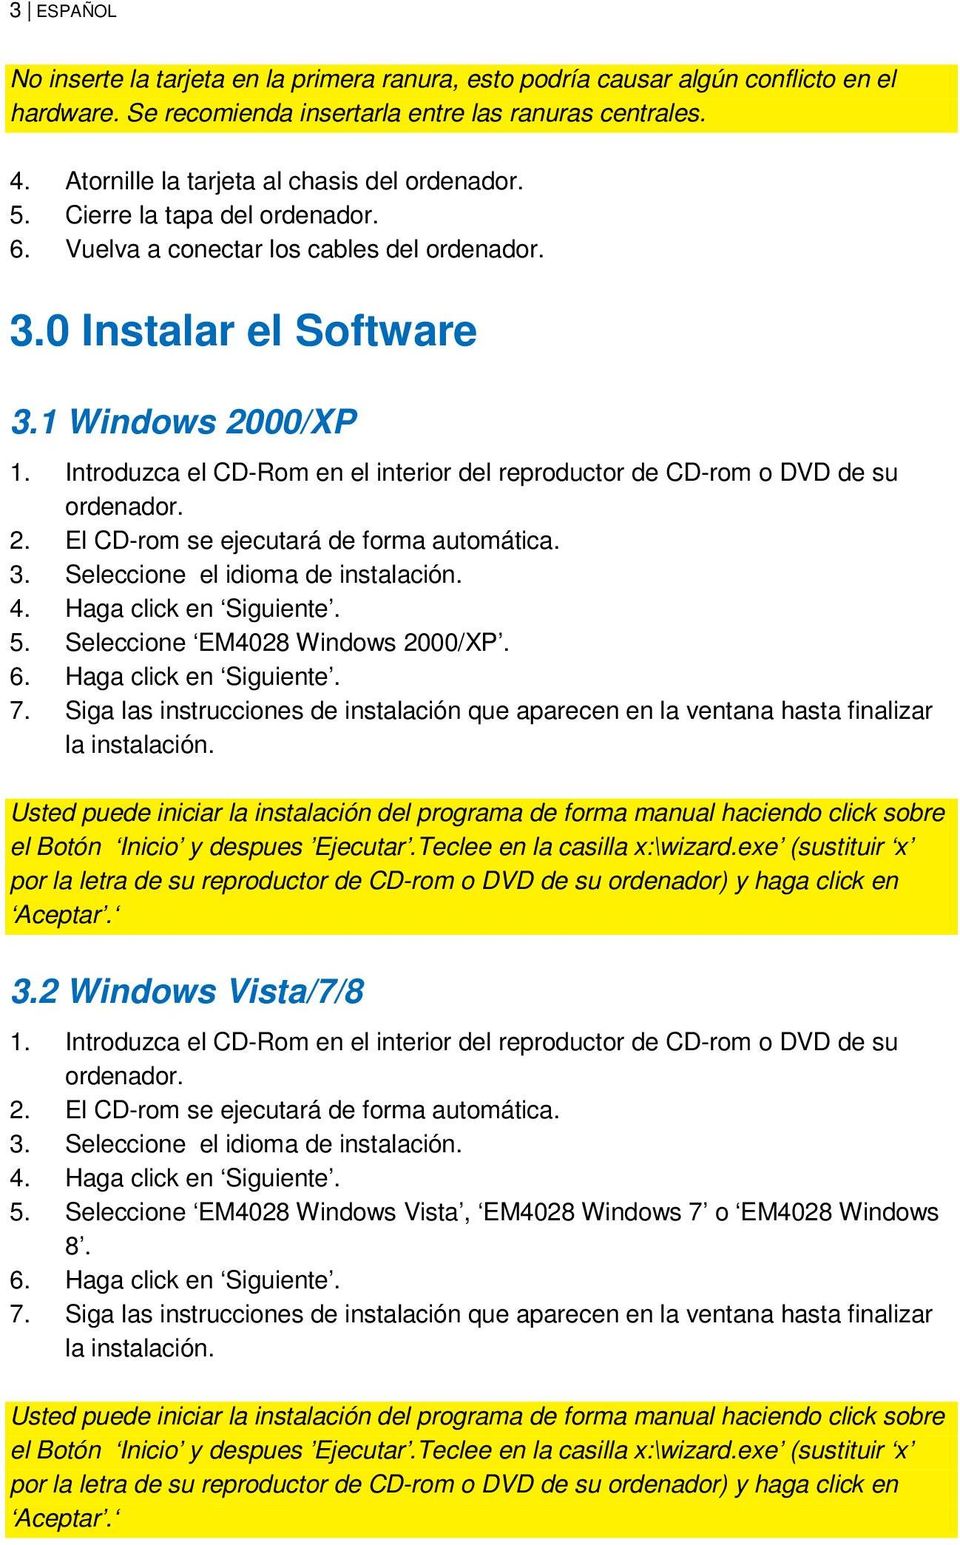 Introduzca el CD-Rom en el interior del reproductor de CD-rom o DVD de su ordenador. 2. El CD-rom se ejecutará de forma automática. 3. Seleccione el idioma de instalación. 4. Haga click en Siguiente.